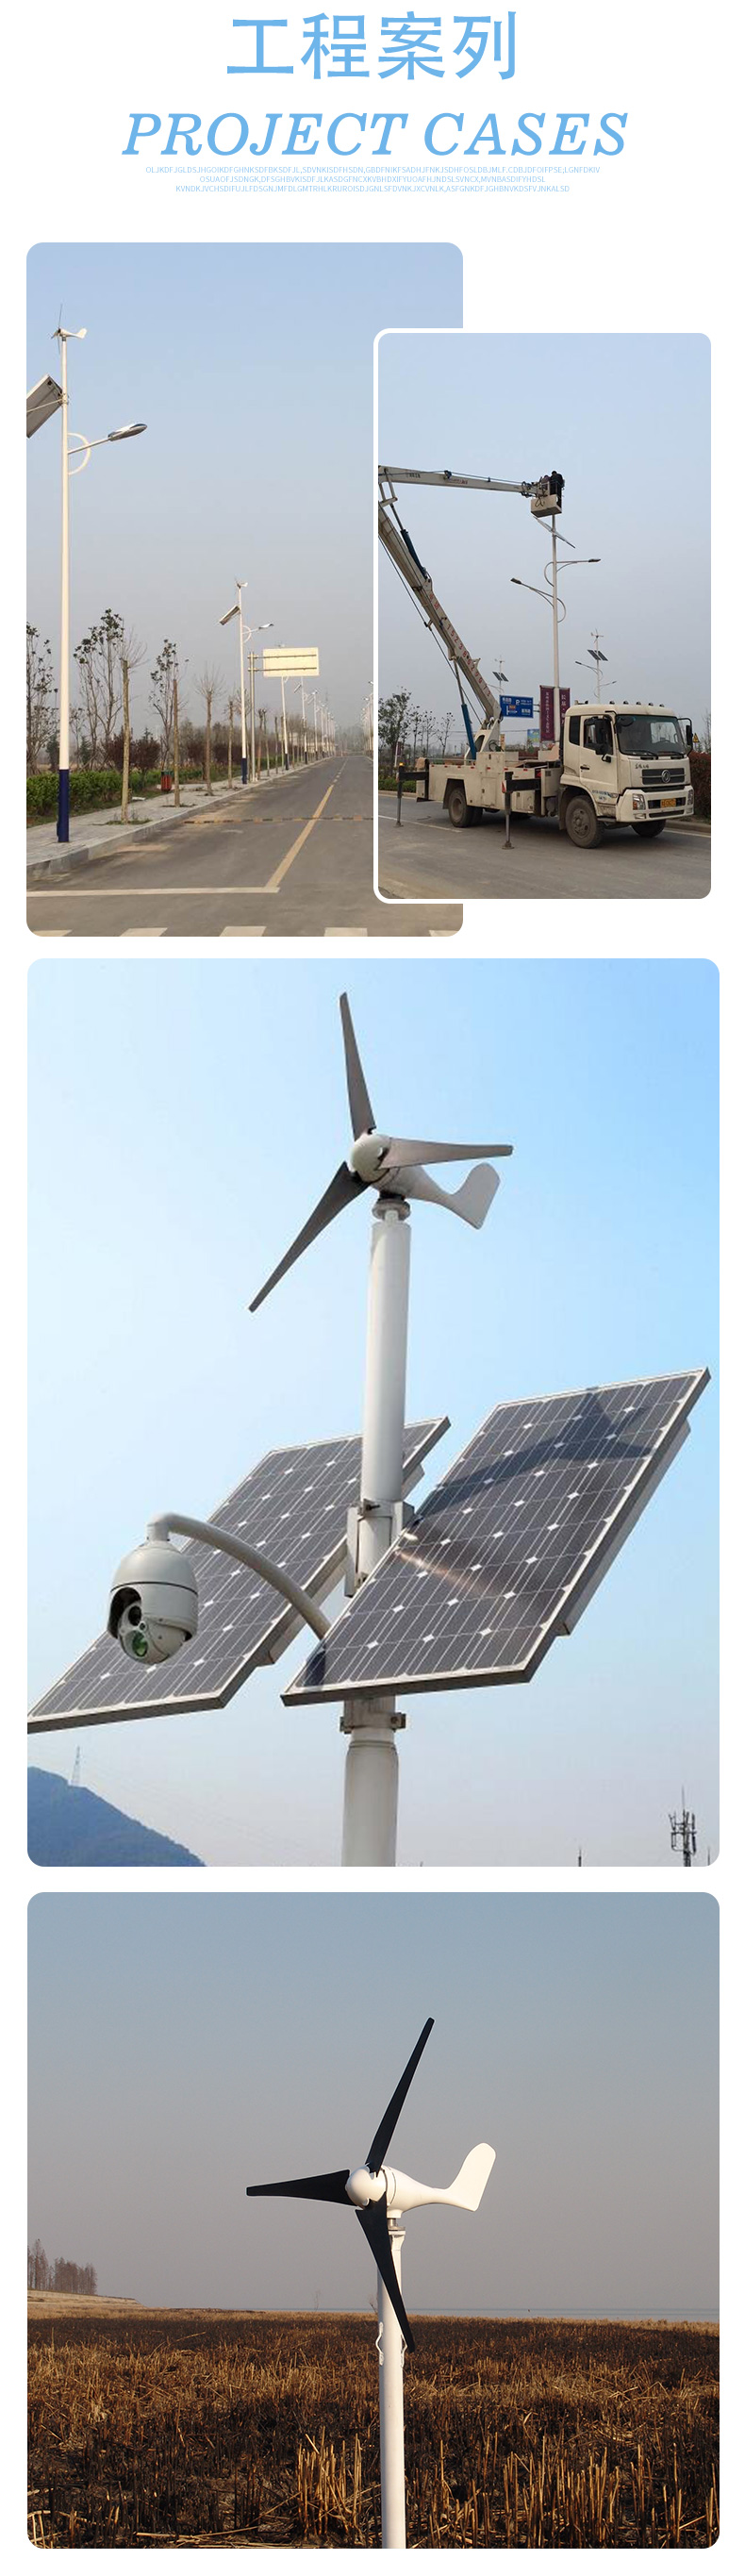 S型100-300W风力发电机